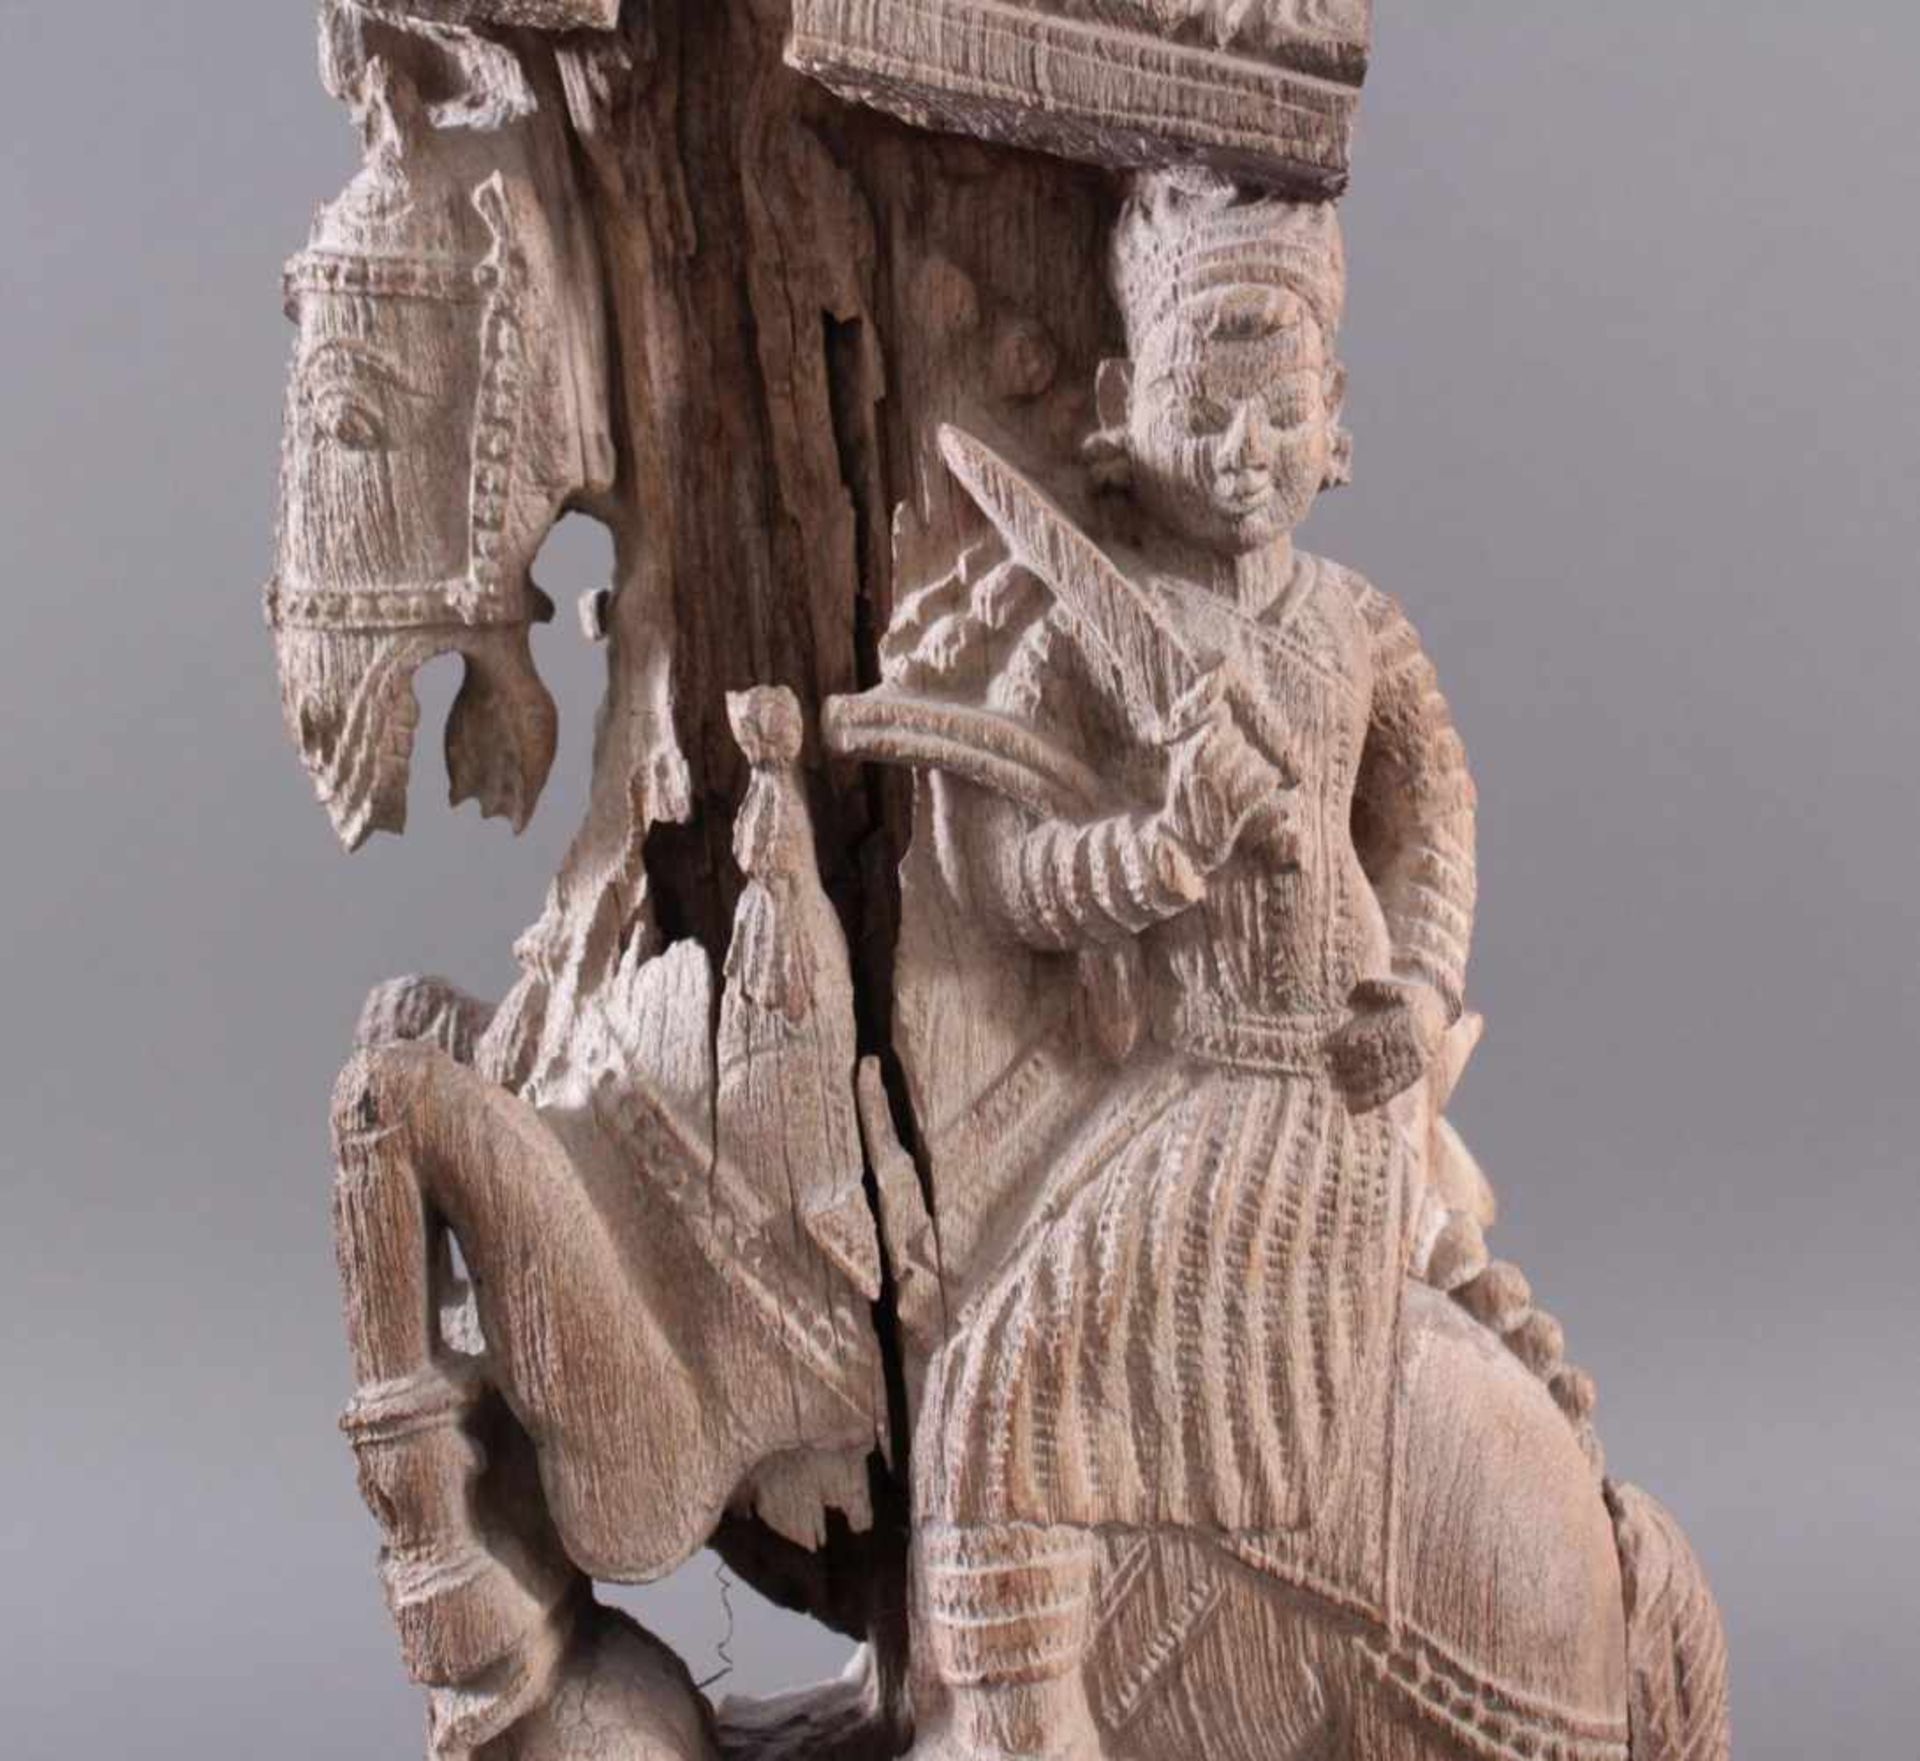 Holzplastik eines Reiters auf einem Pferd, Indien wohl Orissa 15./16. Jh. - Image 9 of 13